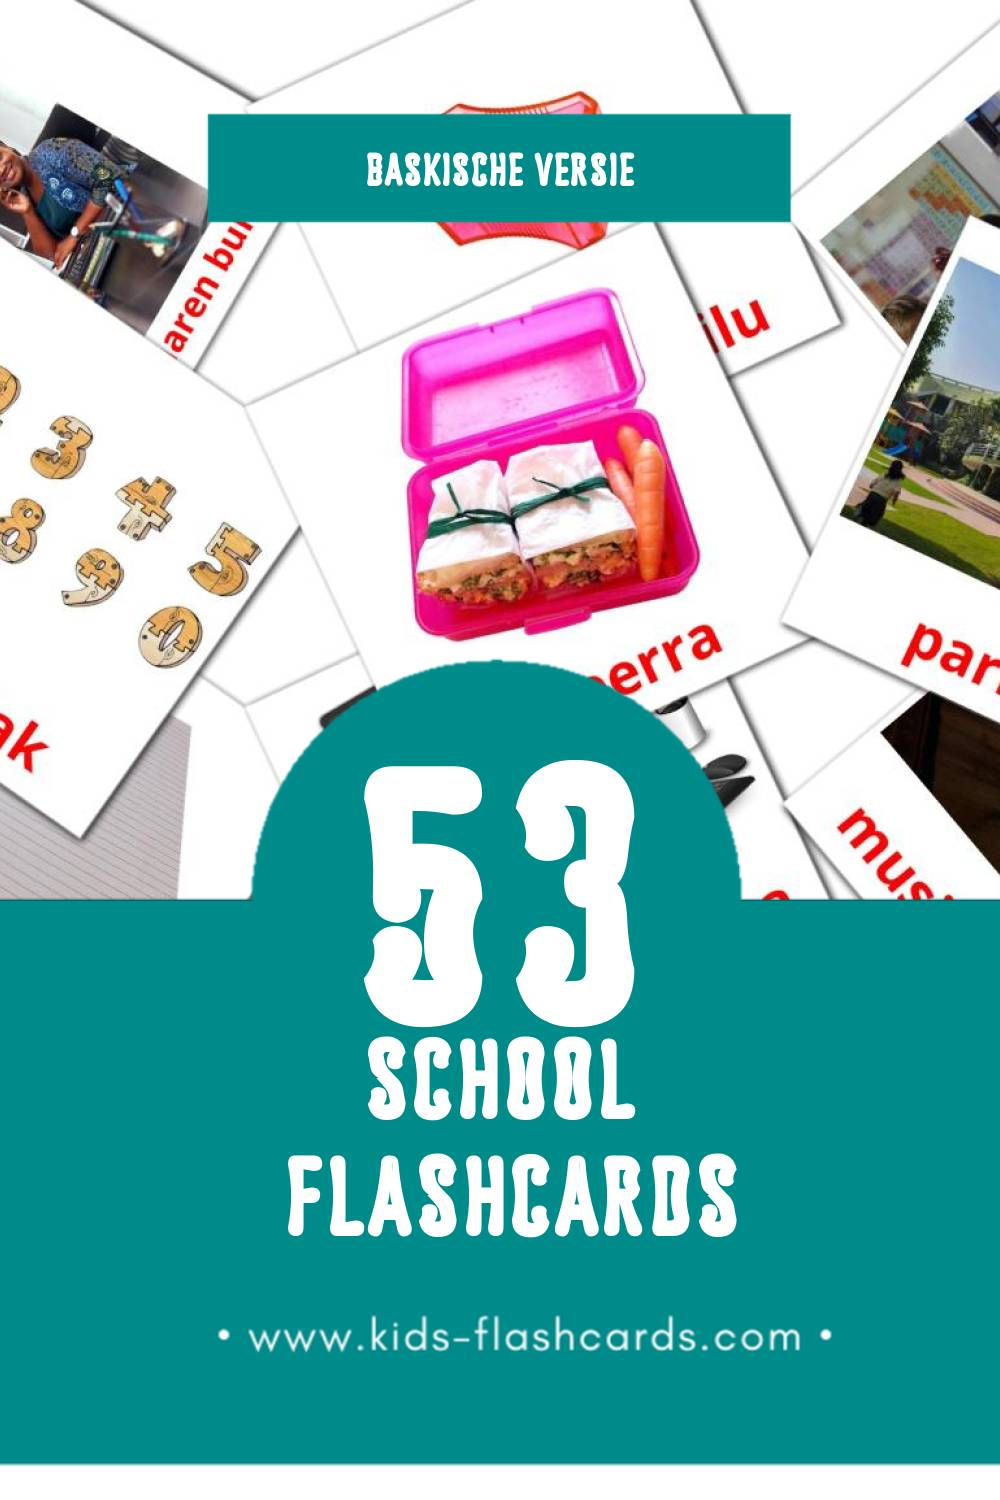 Visuele Eskola Flashcards voor Kleuters (53 kaarten in het Baskisch)